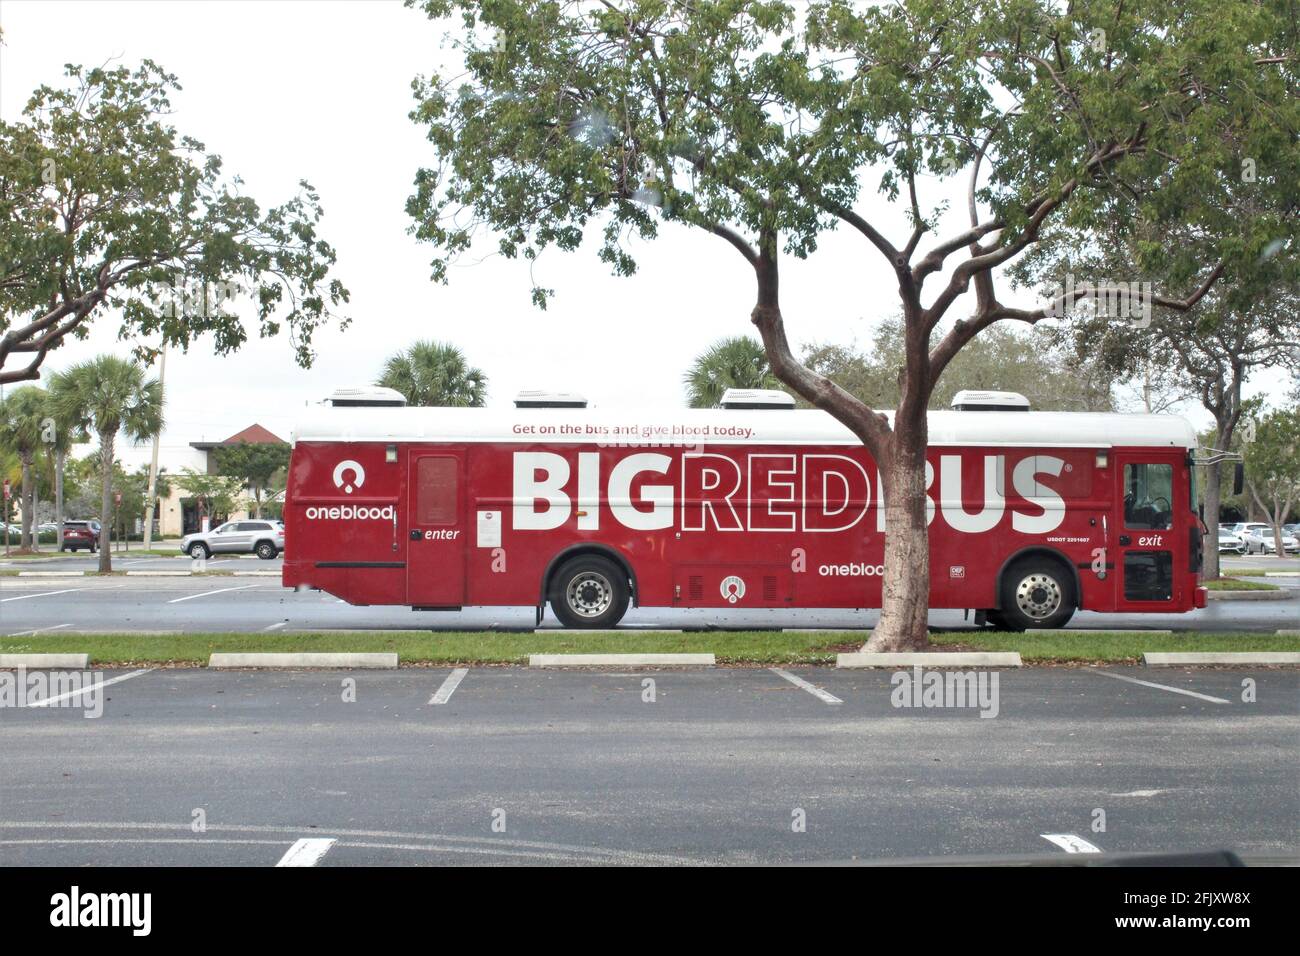 Mobile Big Red Bus parkte auf dem Parkplatz auf der Suche nach Blutspenden. Blutspenden helfen Trauma-, Chirurgie-, Plasma- und Krebspatienten im Notfall Stockfoto